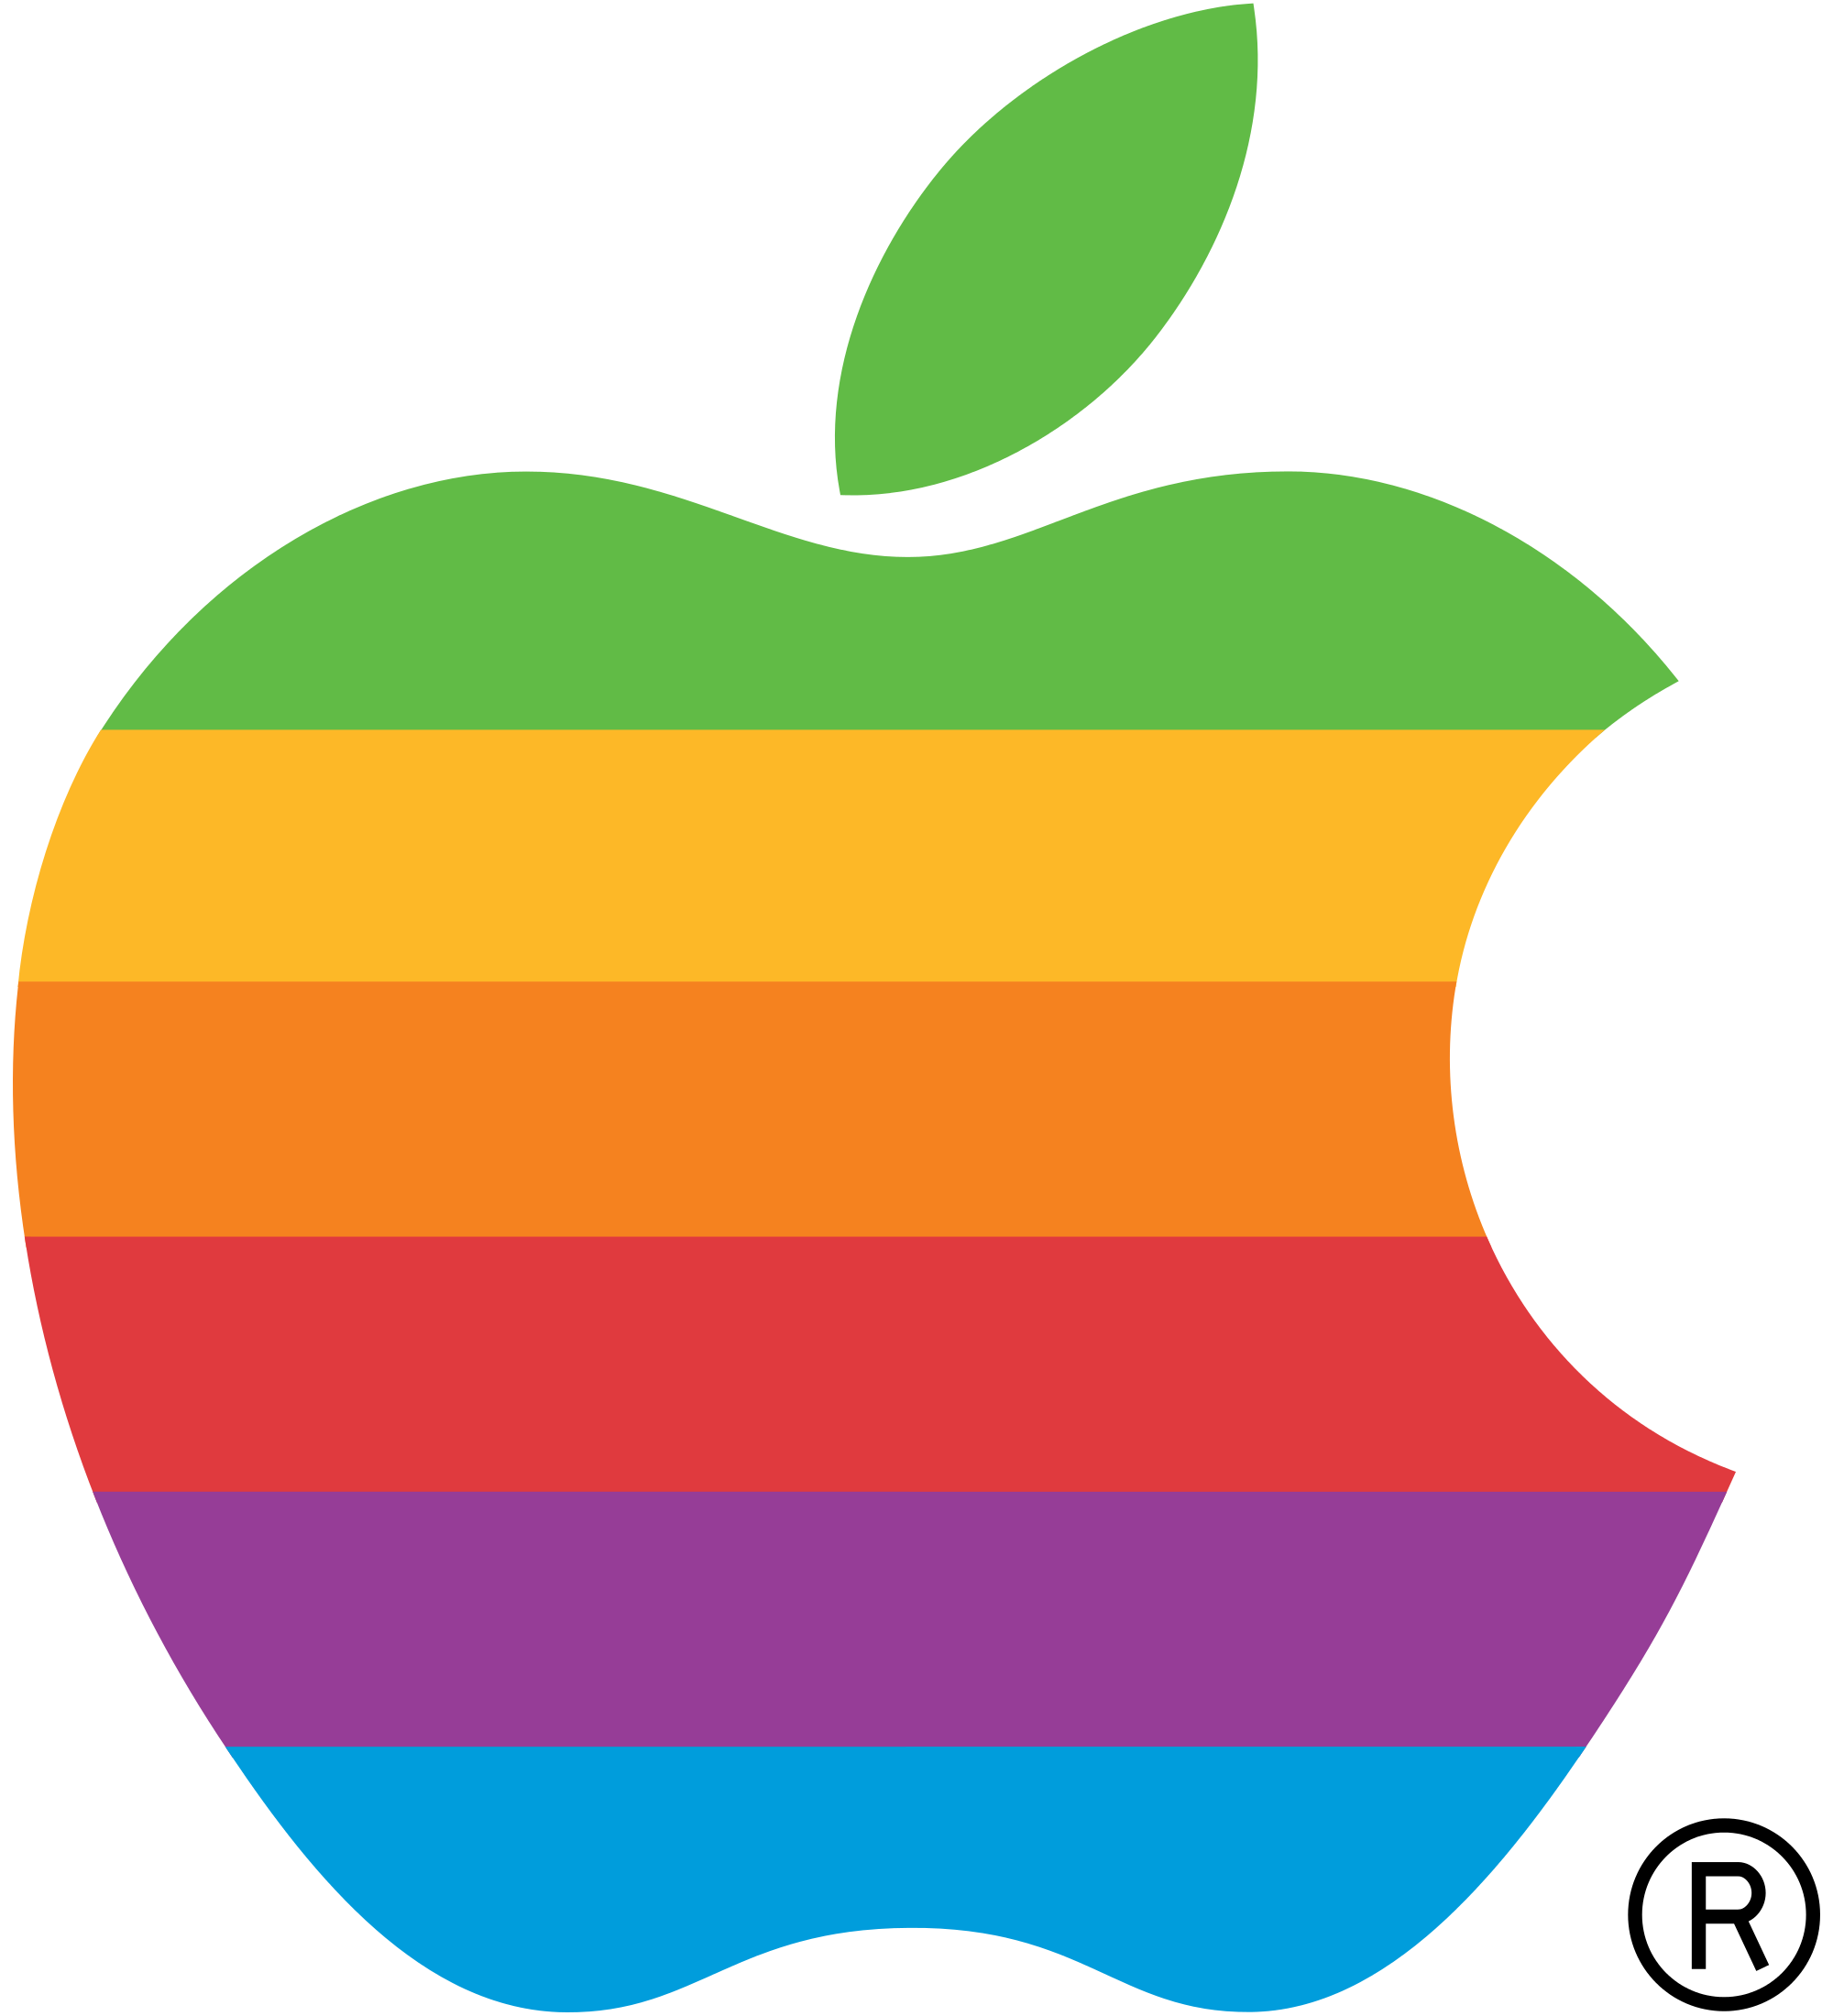 Apple Logo Macintosh - Apple logo PNG png download - 2000*2200 - Free ...